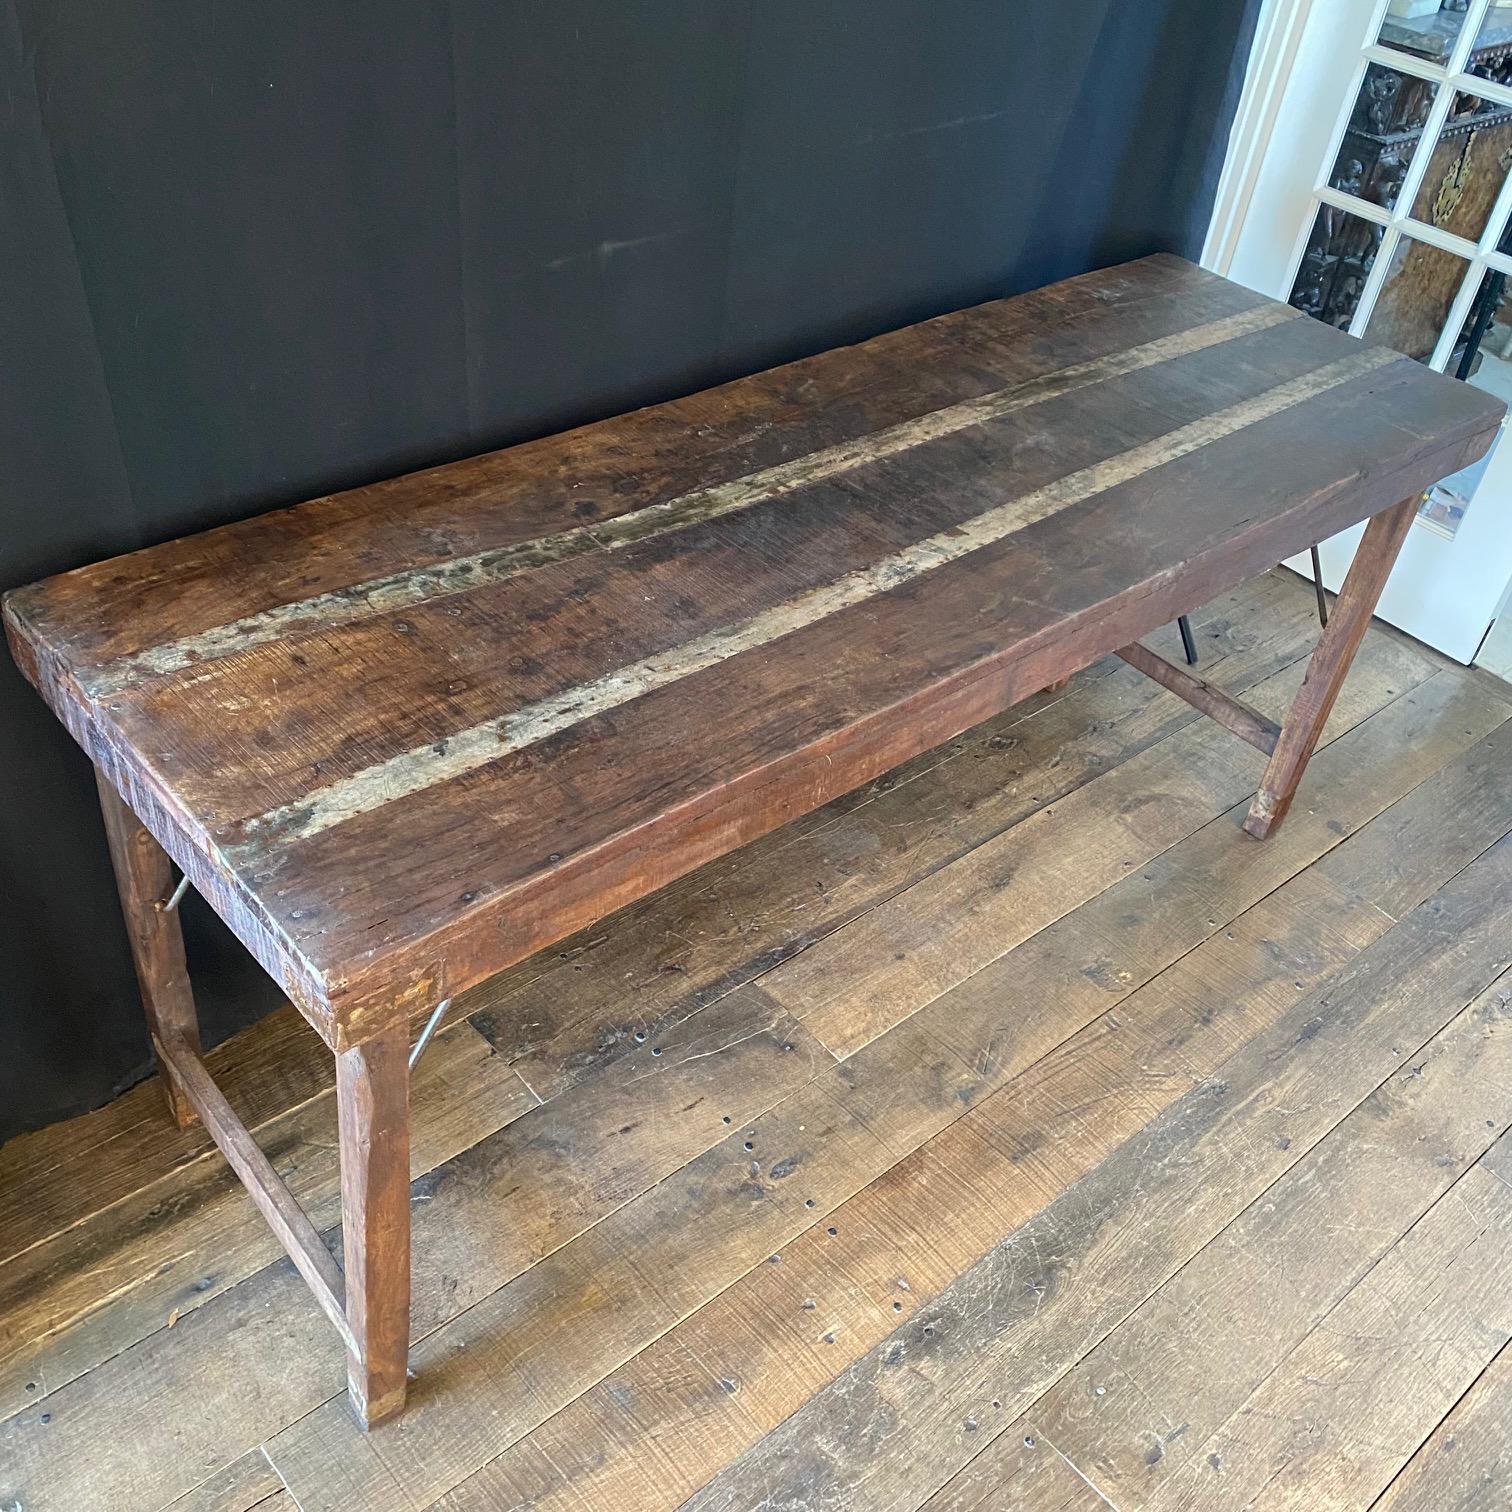 Table pliante rustique, en bois dur et cerclée de fer, utilisée par les artisans, peut-être pour suspendre du papier. La table se plie pour faciliter son transport vers les projets. Cette table peut être utilisée comme table de console, table de